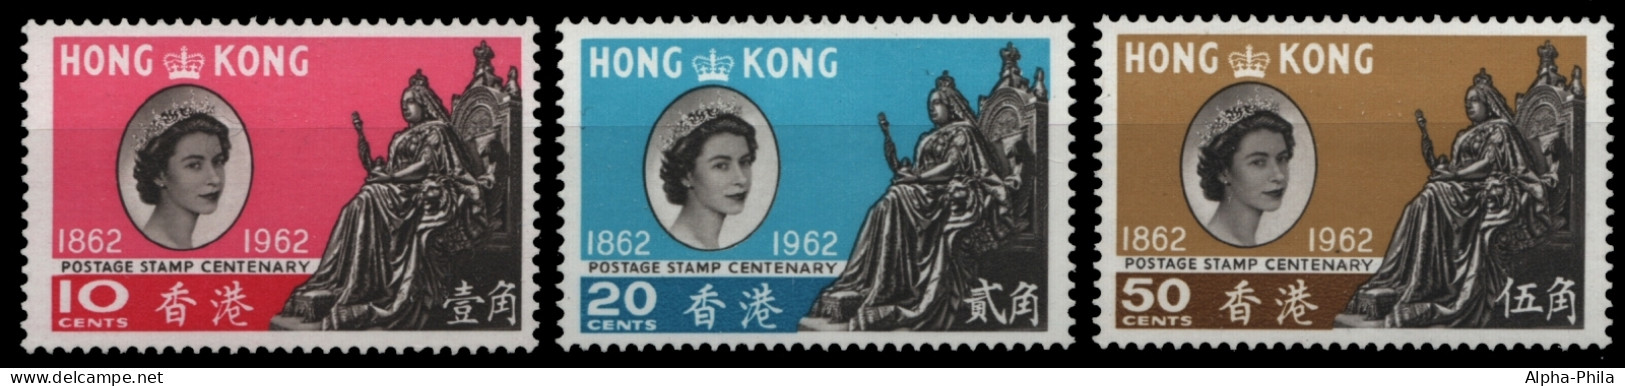 Hongkong 1962 - Mi-Nr. 193-195 ** - MNH - 100 Jahre Hongkong-Briefmarken - Ongebruikt